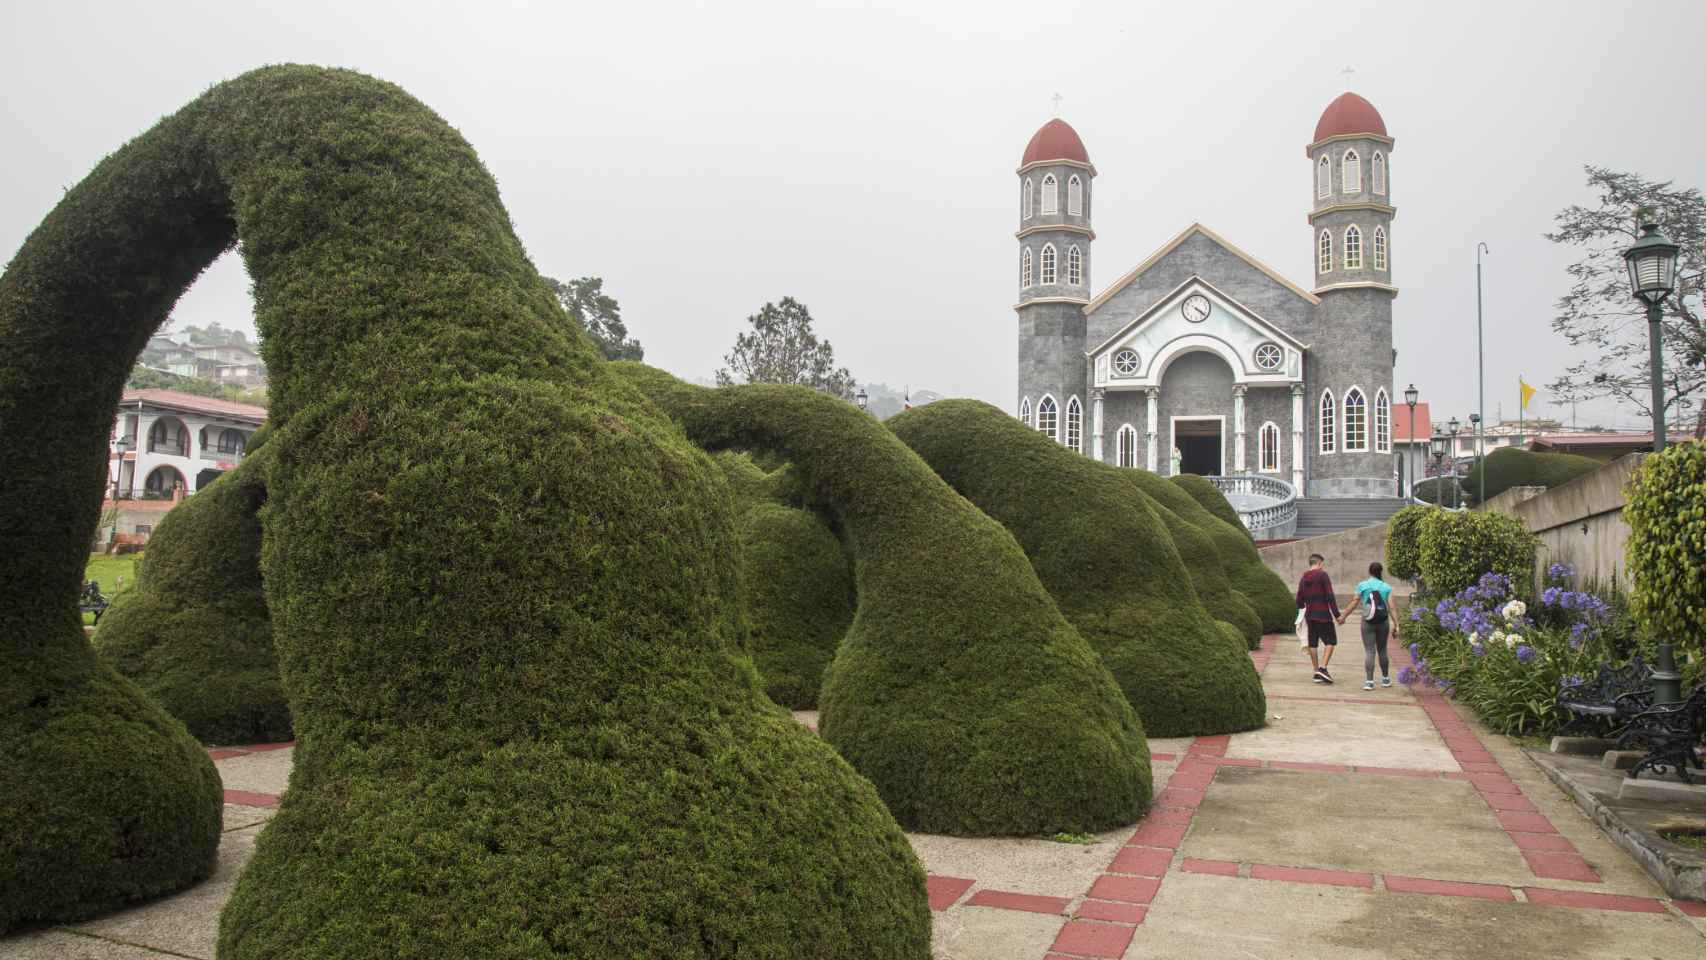 El curioso topiario de cipreses junto a la iglesia de San Rafael Arcángel es el mayor atractivo turísico de Zarzero.